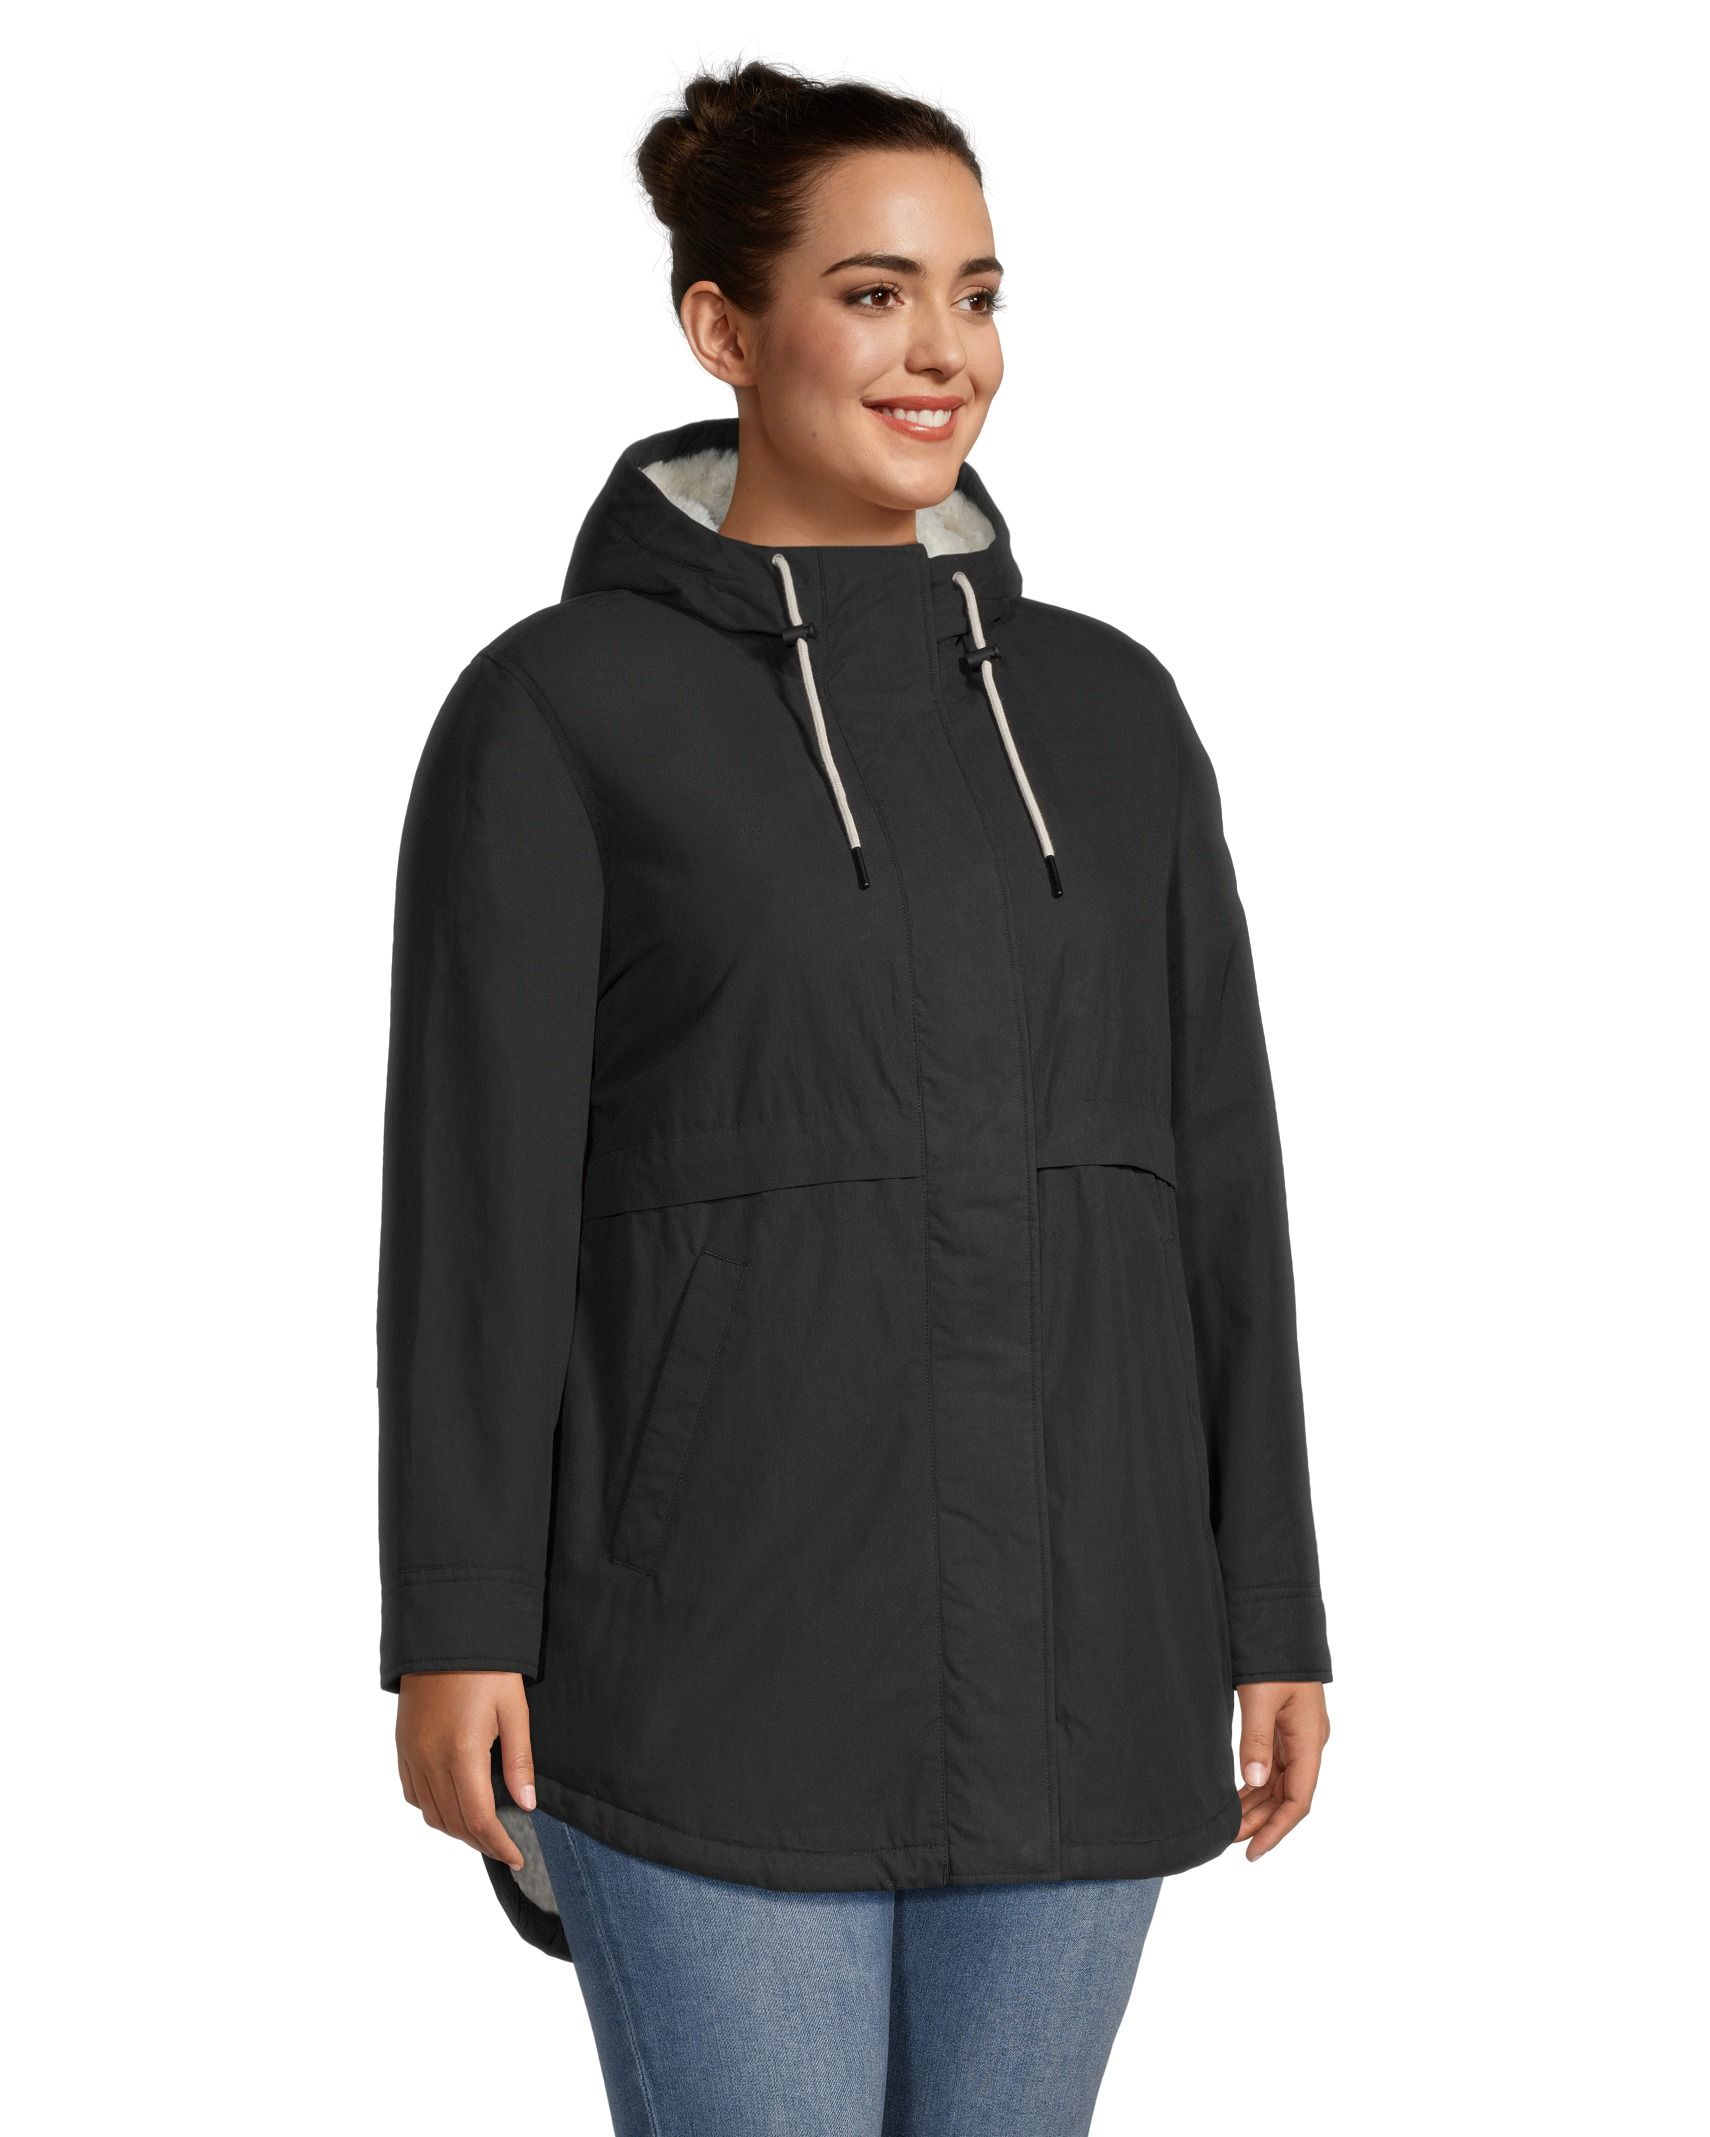 Women's Basin Trail III Full Zip Fleece Jacket